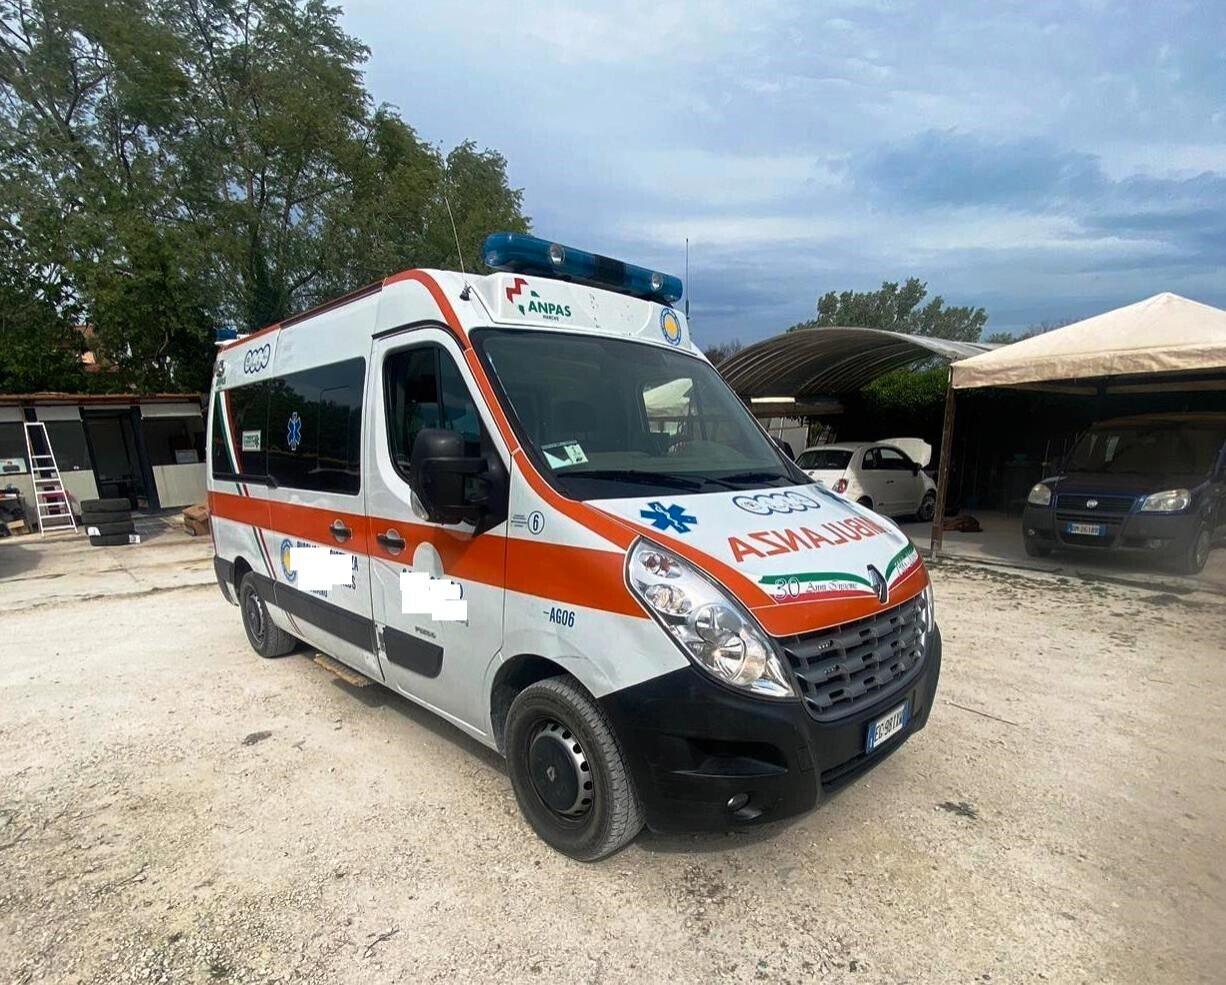 Renault ambulanza /POSSIBILE AUTOCARRO 2 P CAMPER